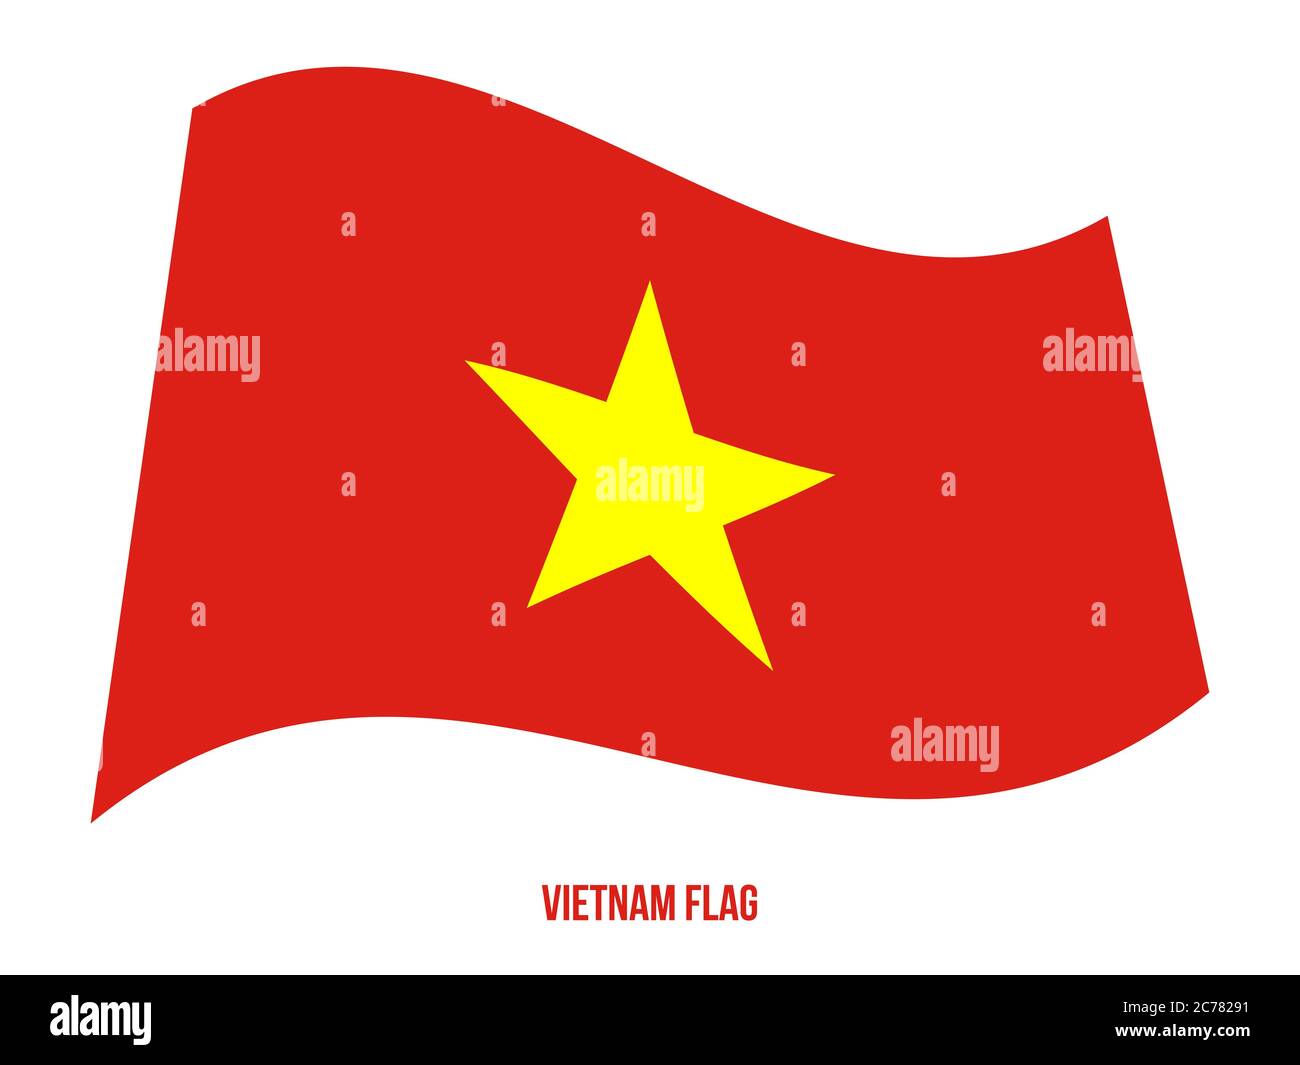 Vietnam Flag Waving Vector Illustration on White Background. Vietnam National Flag. Stock Vector